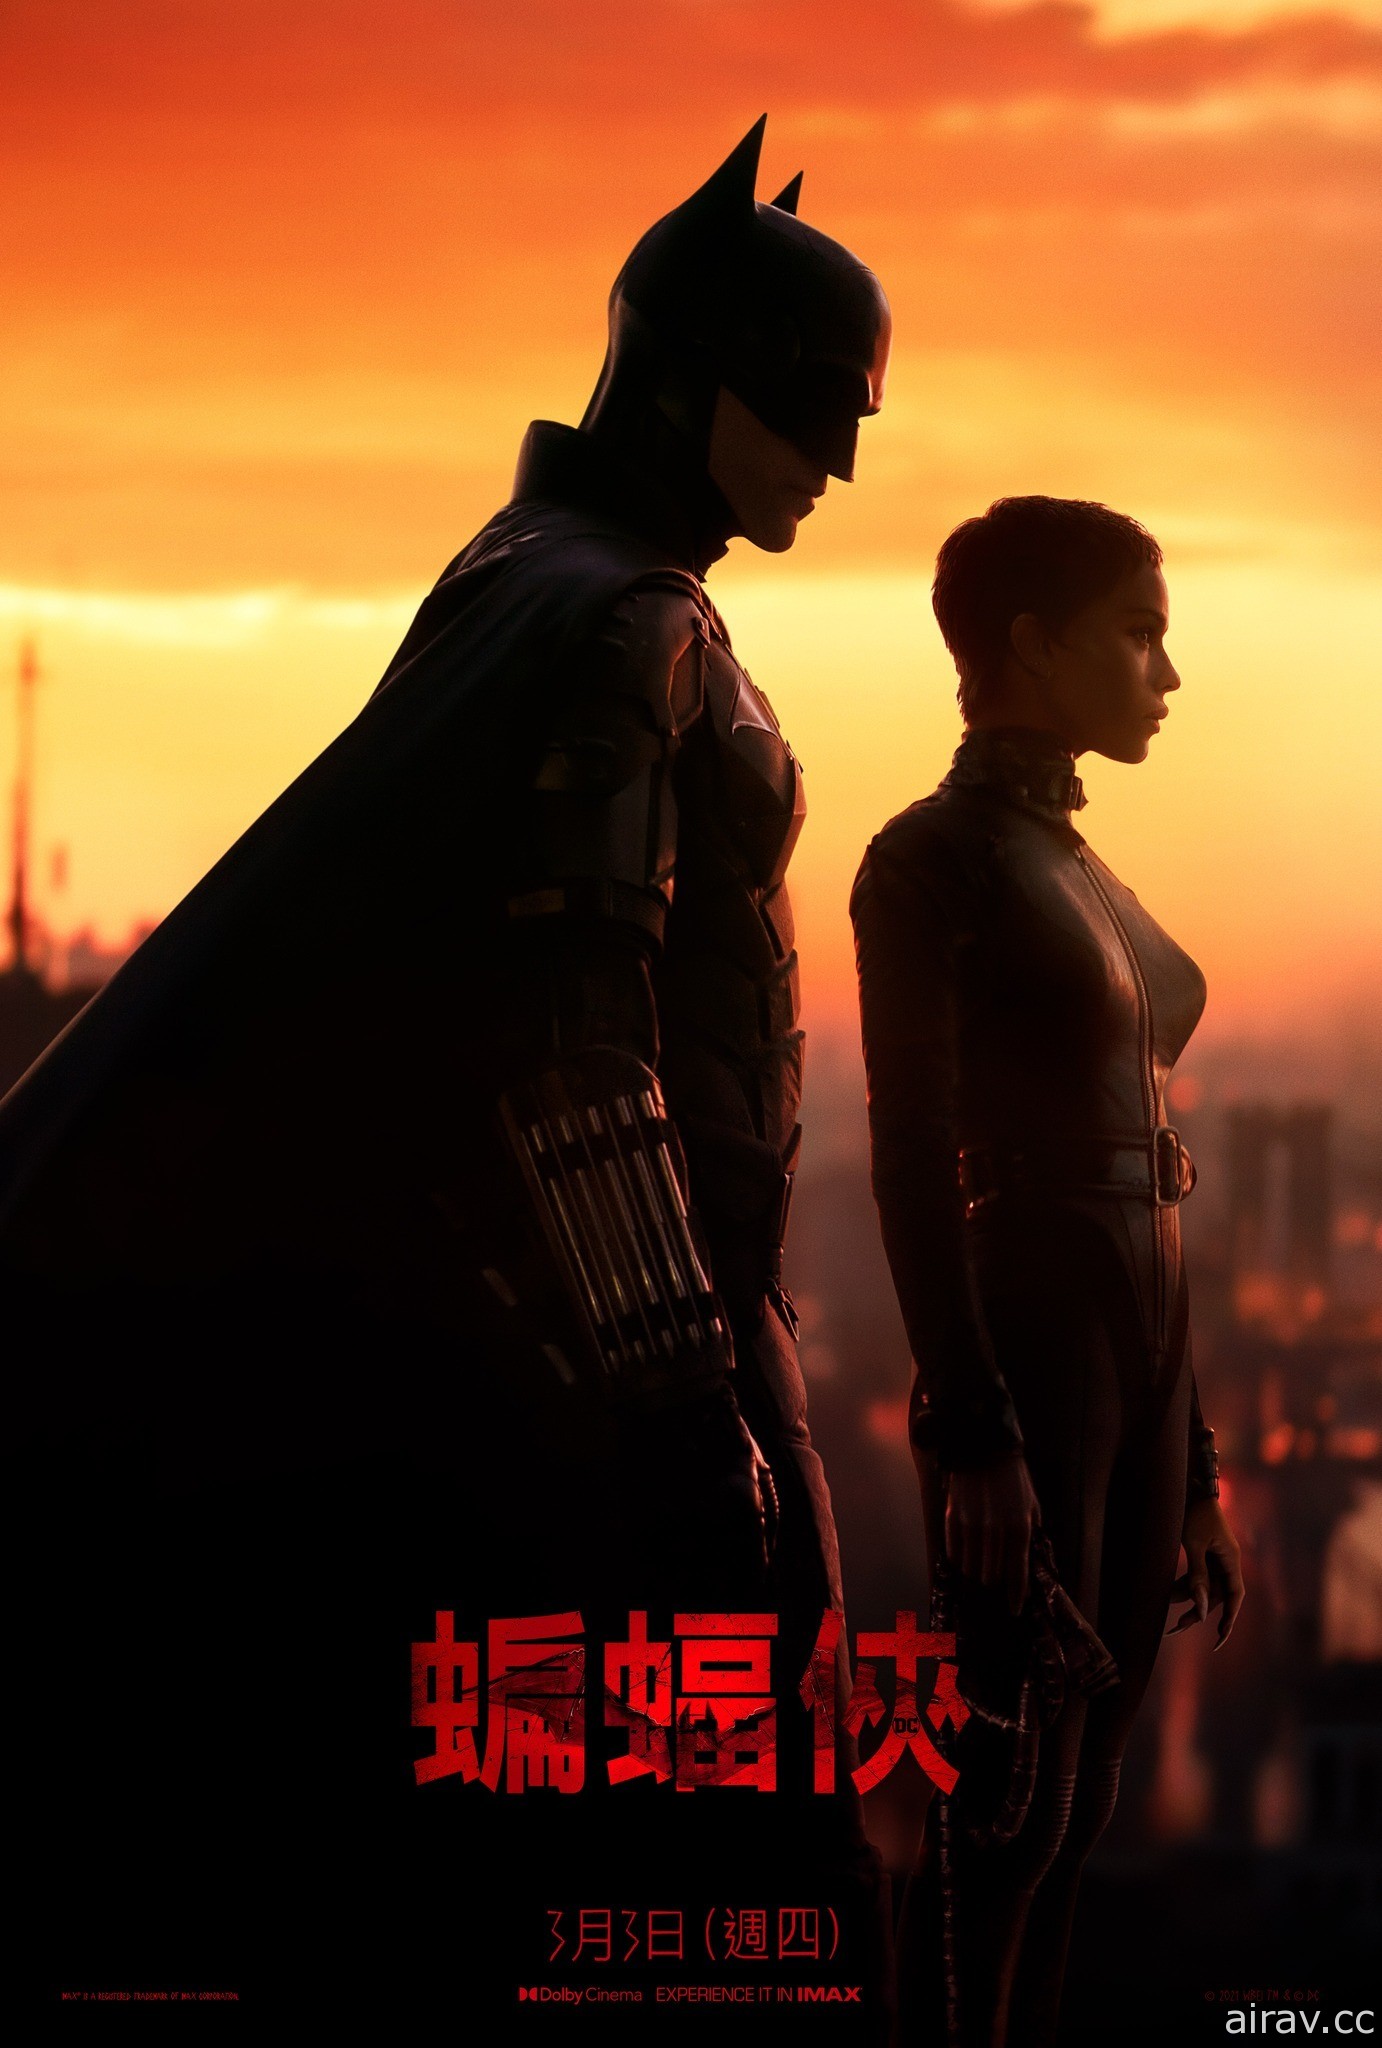 羅伯派汀森《蝙蝠俠》公開最新預告與電影海報